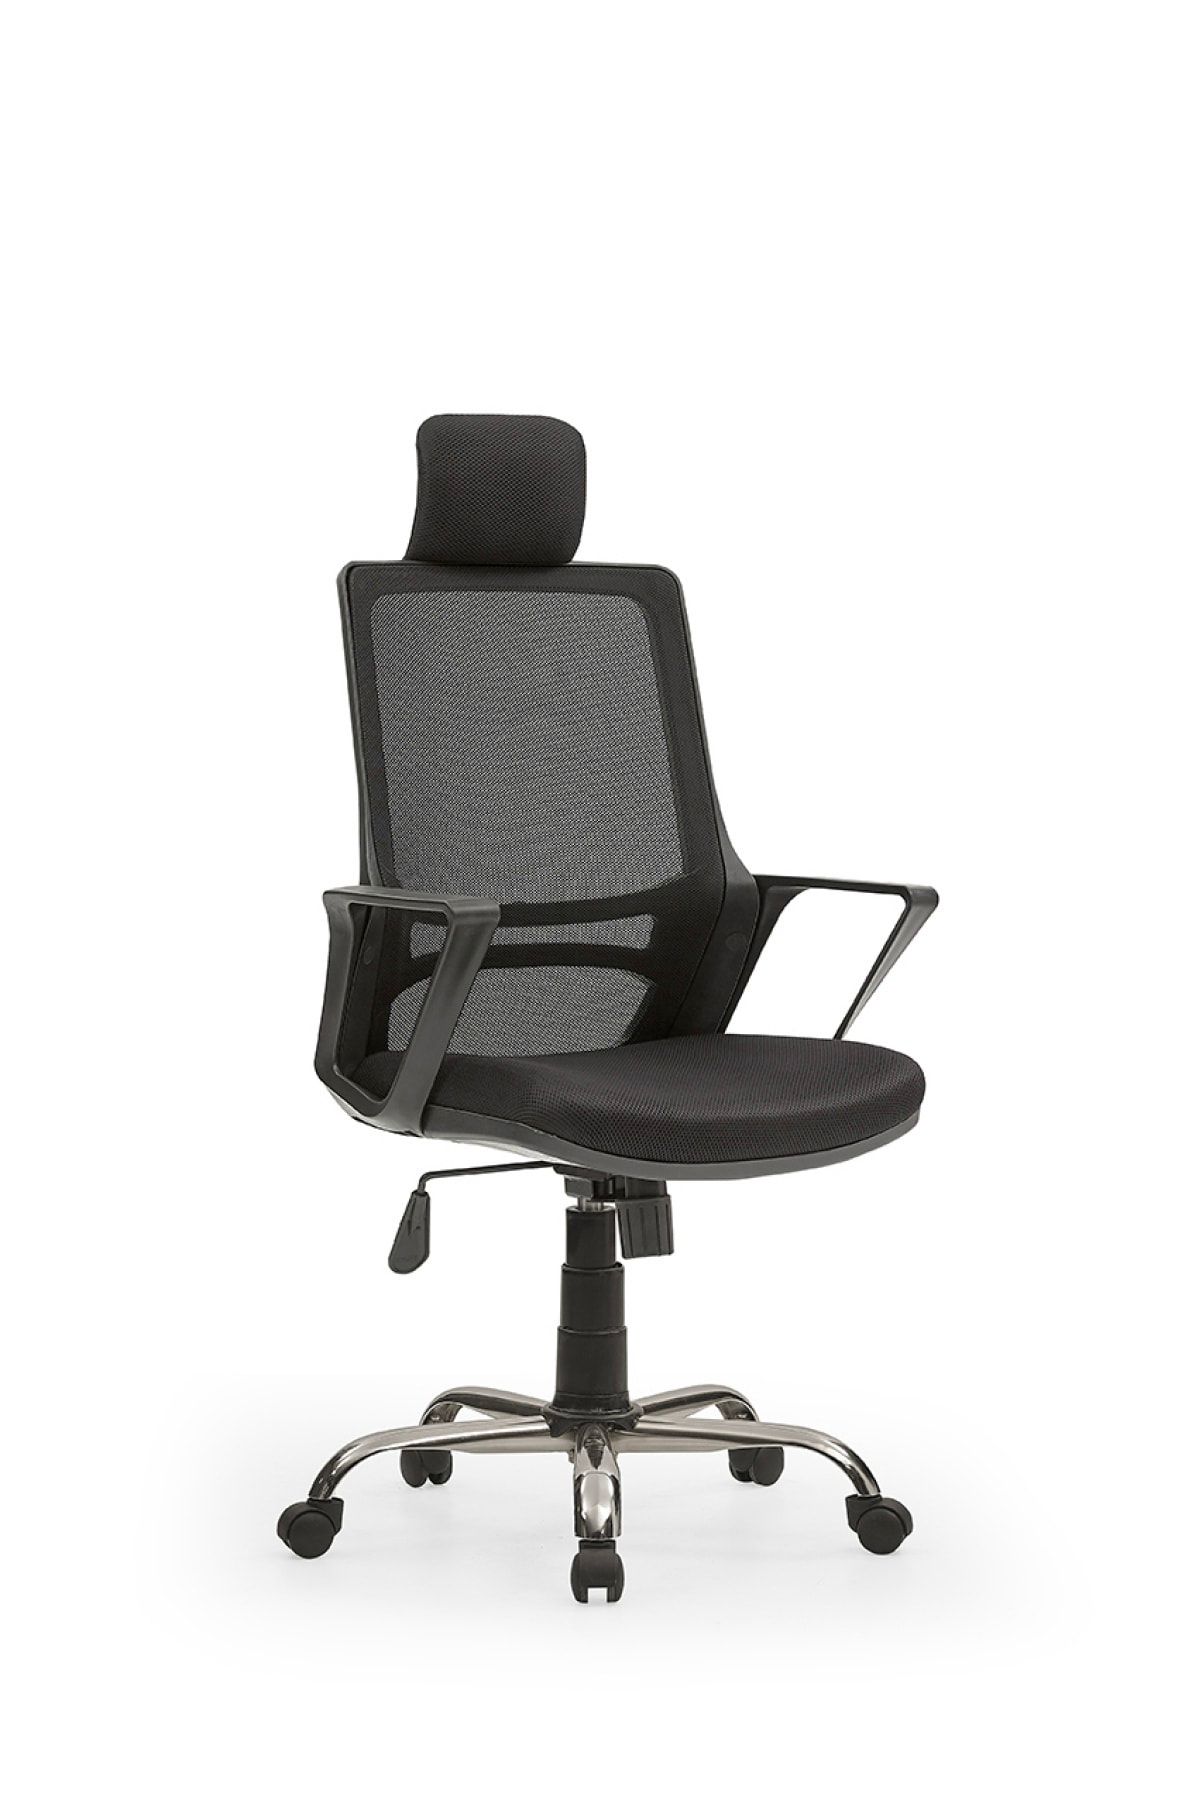 MEHMET YAREN BURO Arya2 Bilgisayar Koltuğu - Ofis - Müdür - Büro - Çalışma Sandalyesi Siyah Renk Krom Ayaklı